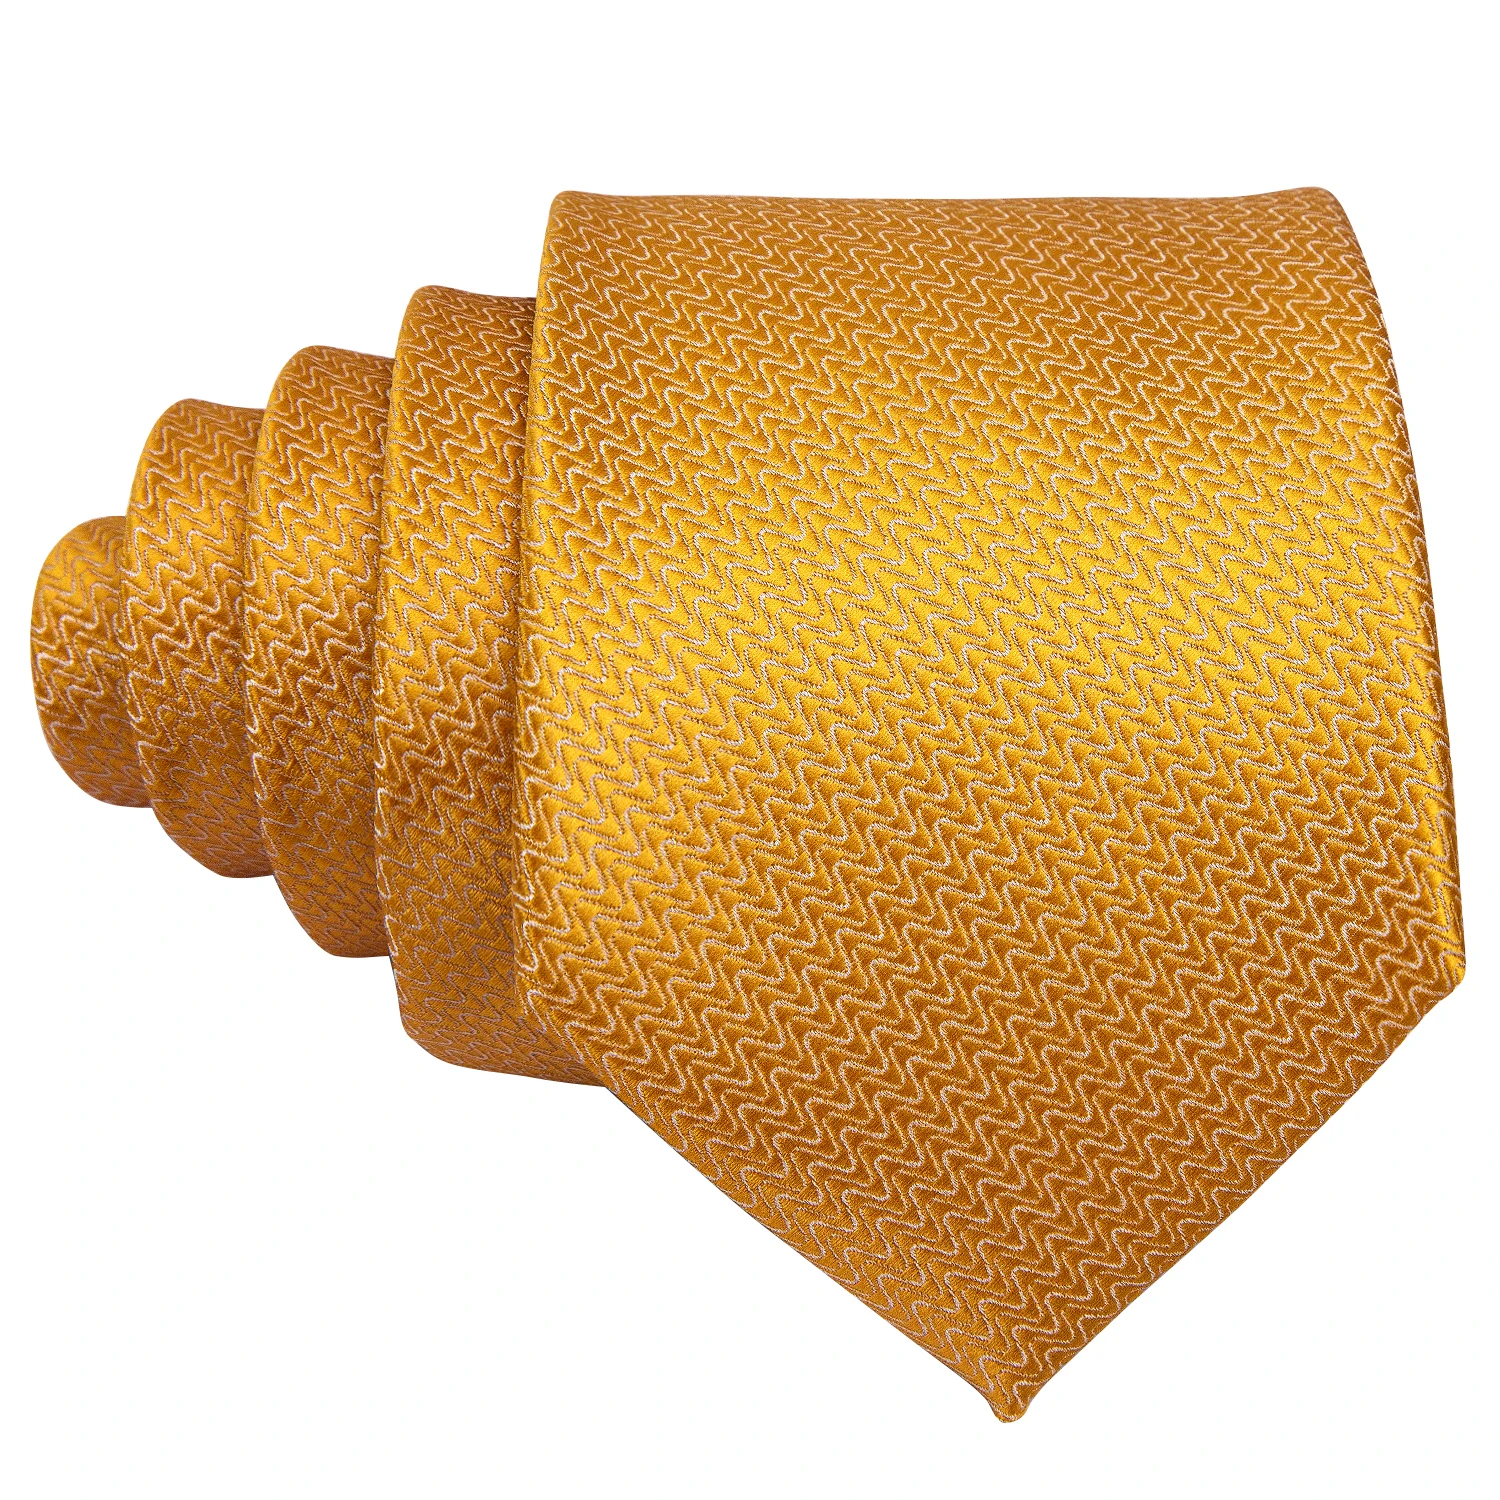  LQGSYT - Corbata de seda para hombre, color dorado y